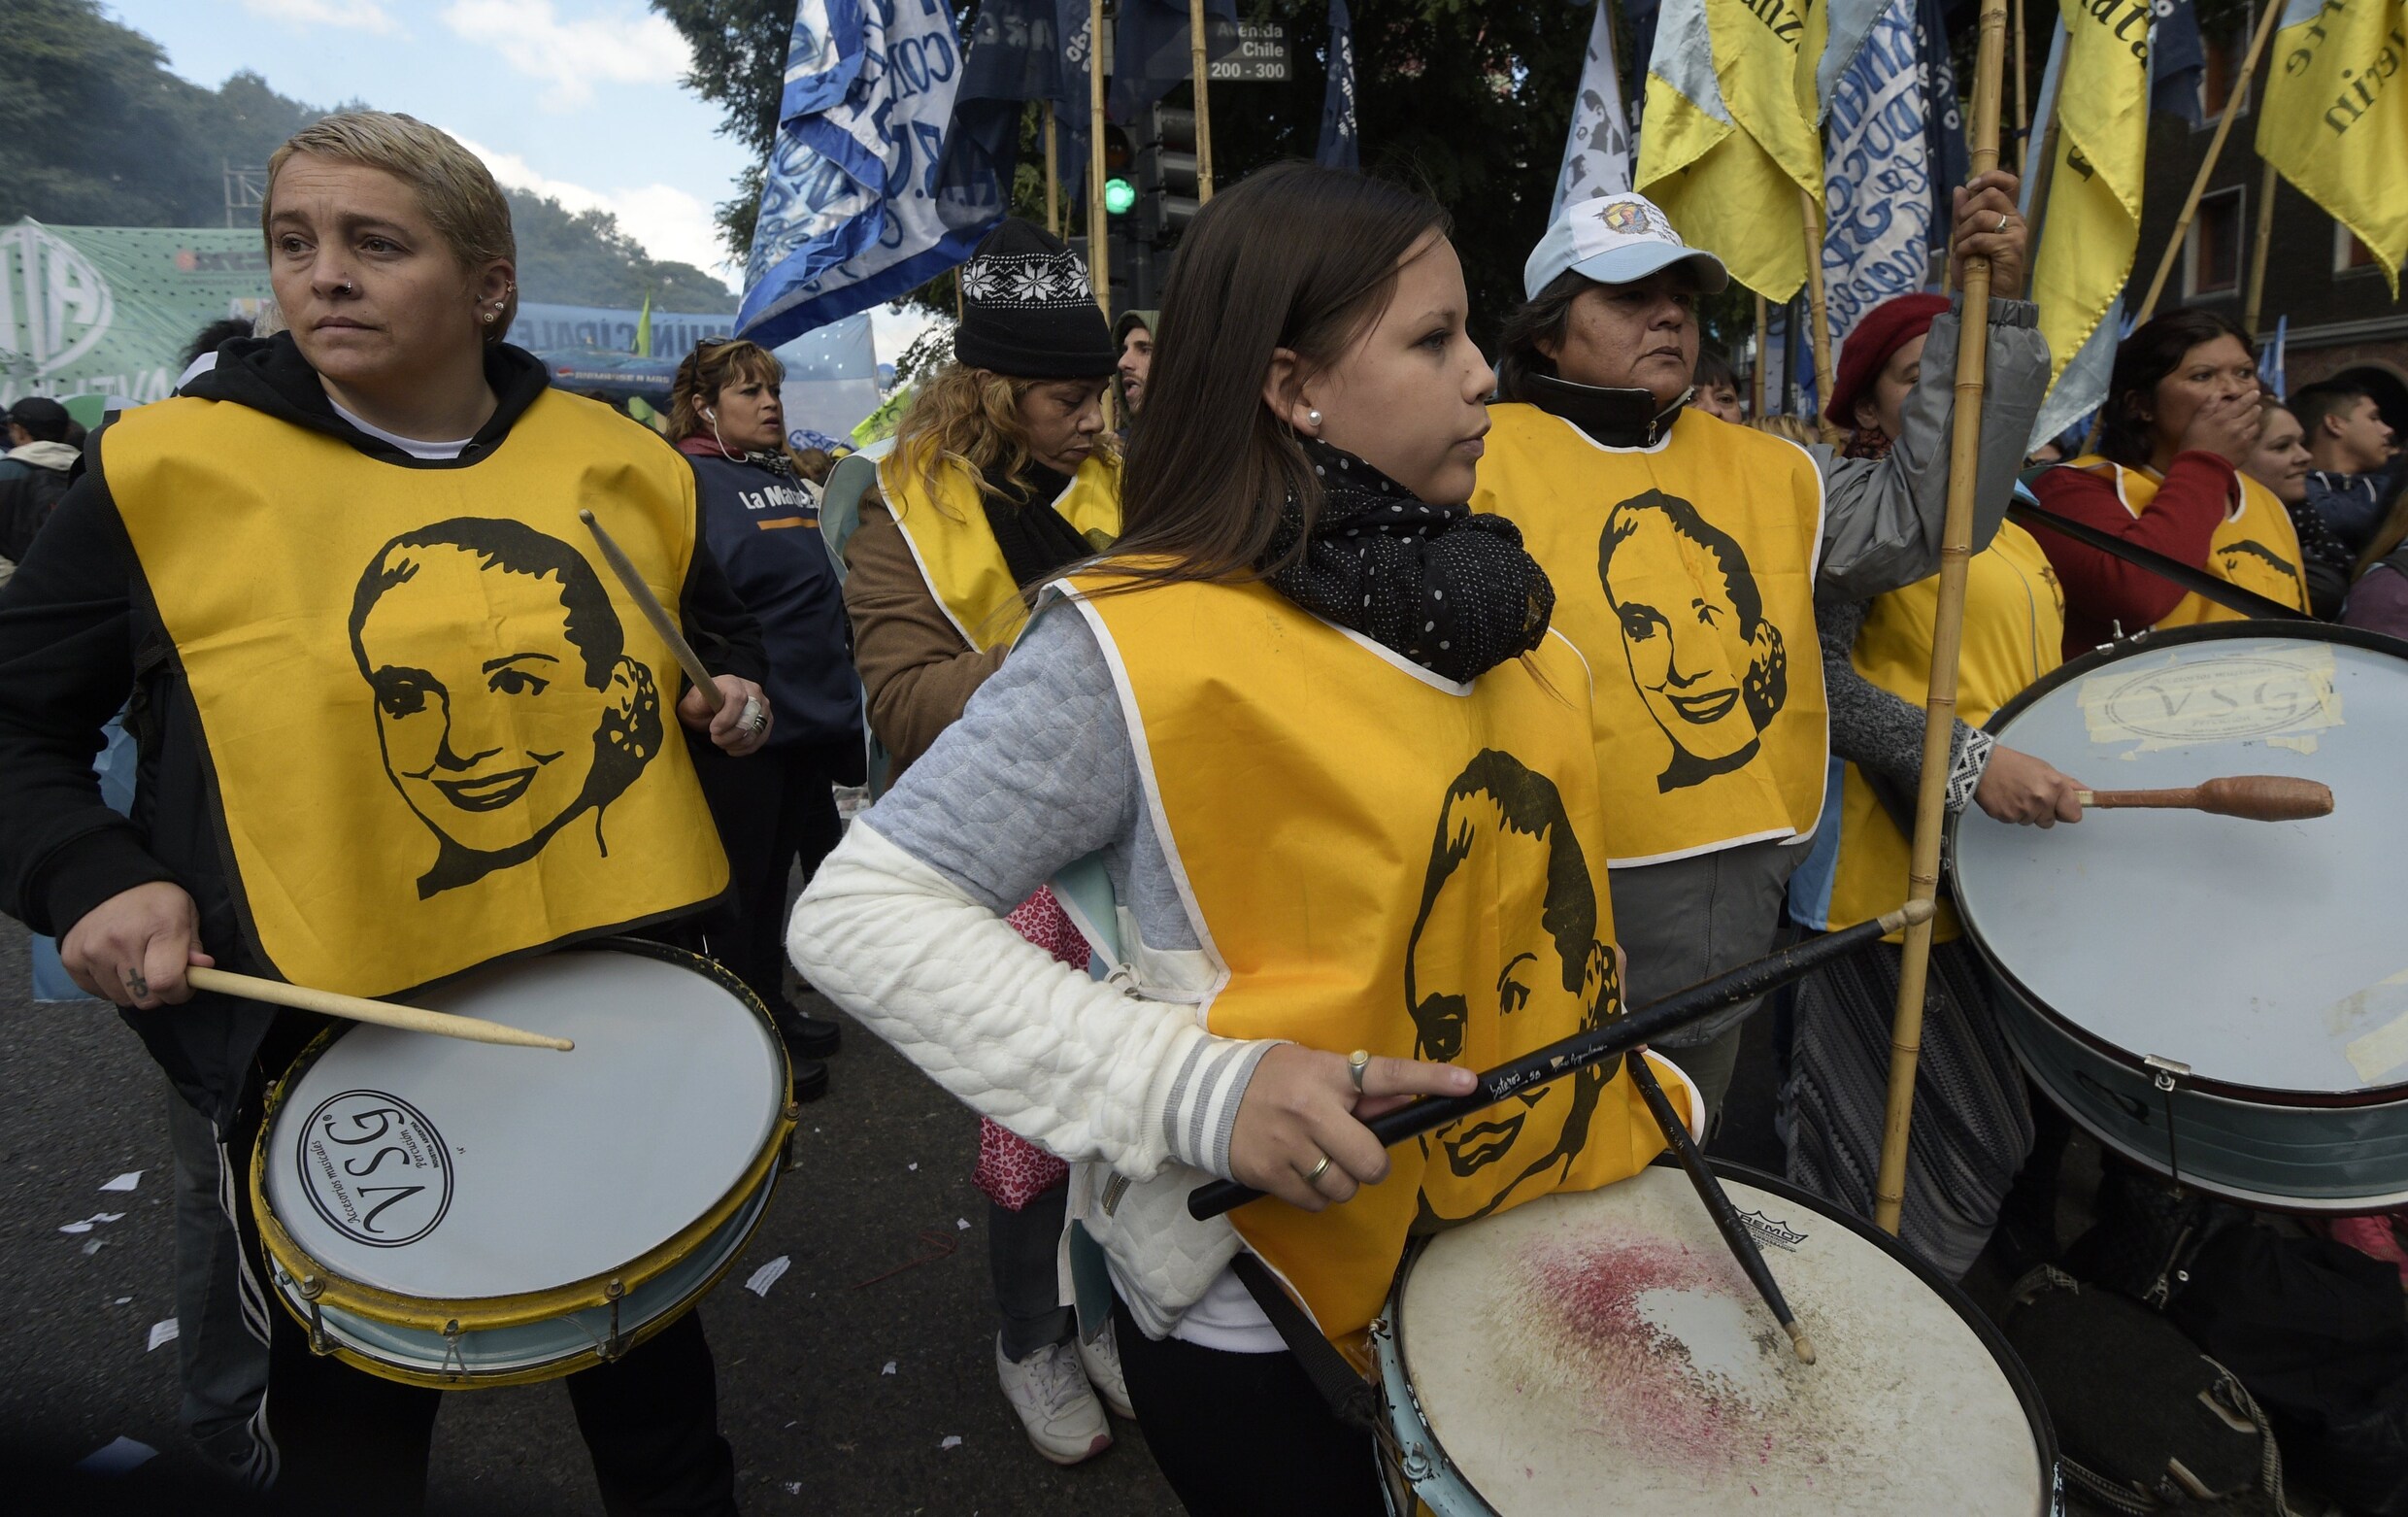 Argentijnen massaal op straat tegen ontslagen en inflatie